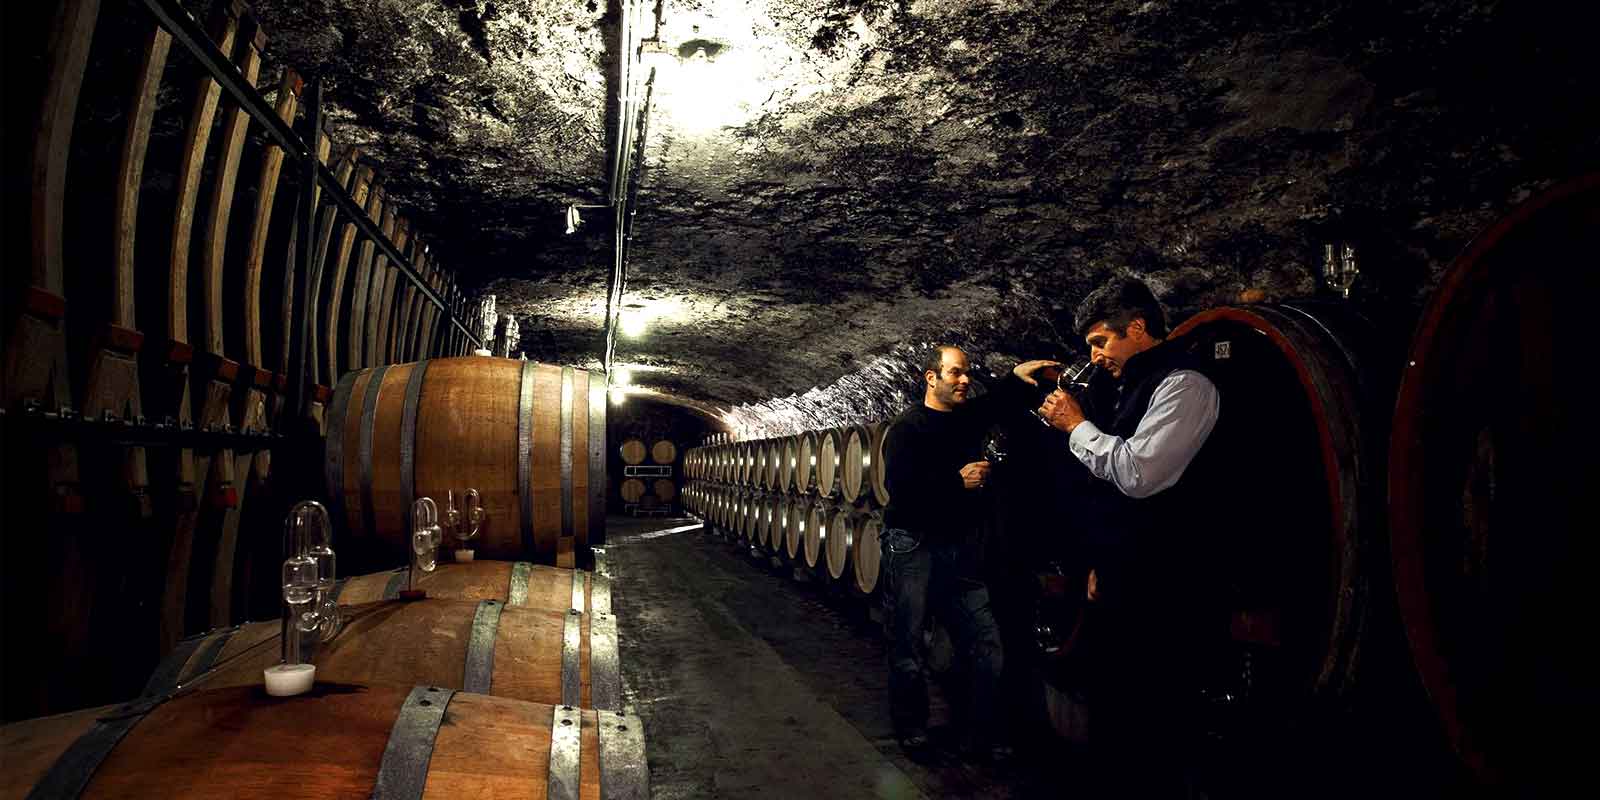 Weingut Kunstler - regiao vinicola de Rheingau Nao sao os valores analiticos que determinam a qualidade, mas sim o sabor das uvas, o aroma do mosto e, sobretudo, a harmonia dos vinhos.